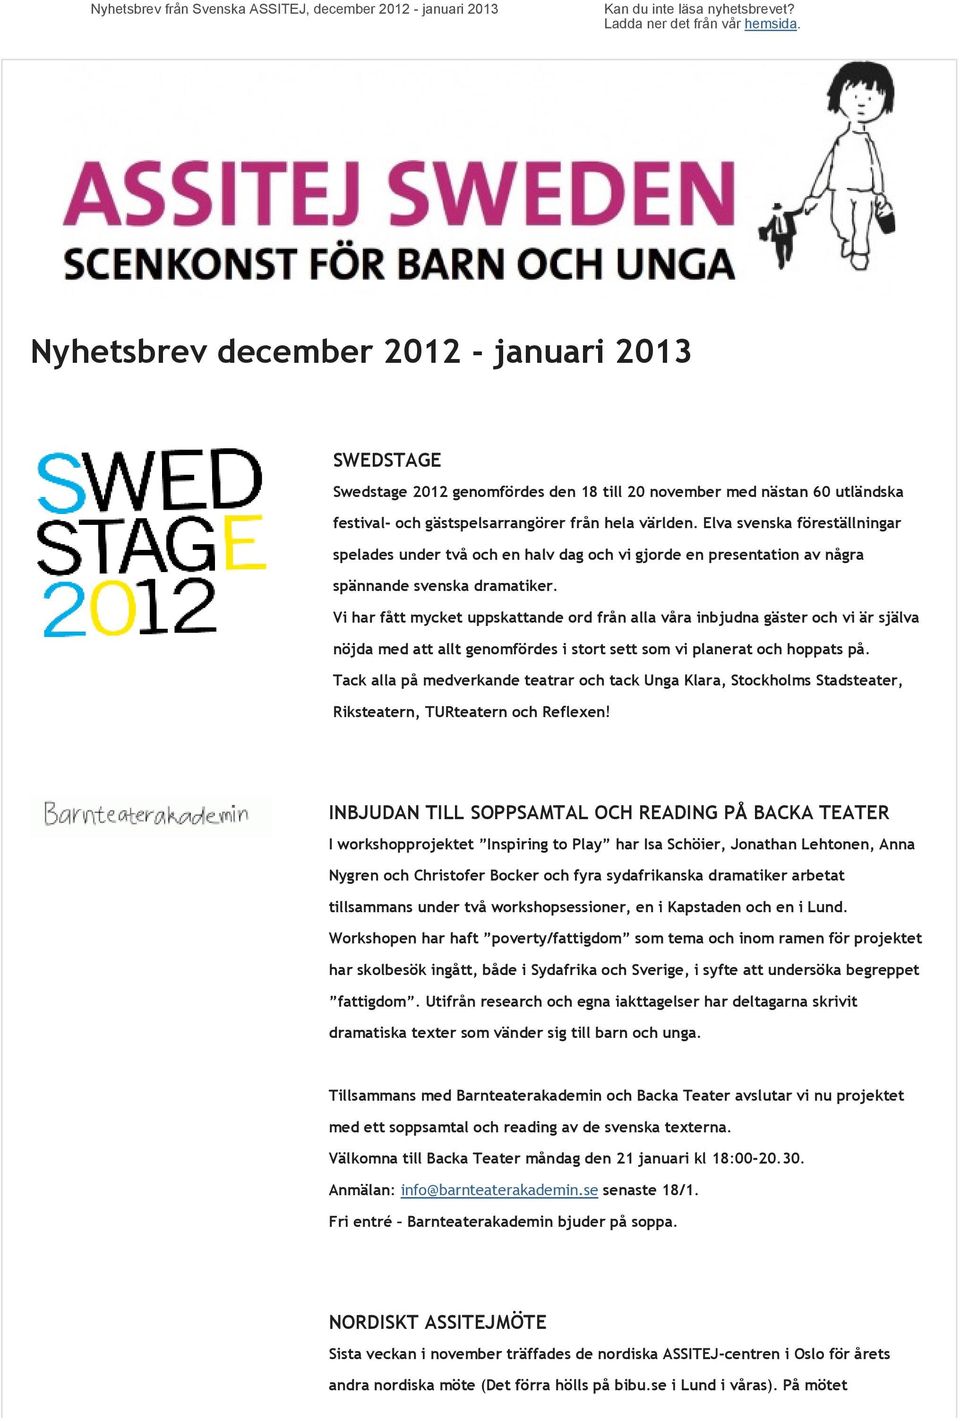 Elva svenska föreställningar spelades under två och en halv dag och vi gjorde en presentation av några spännande svenska dramatiker.